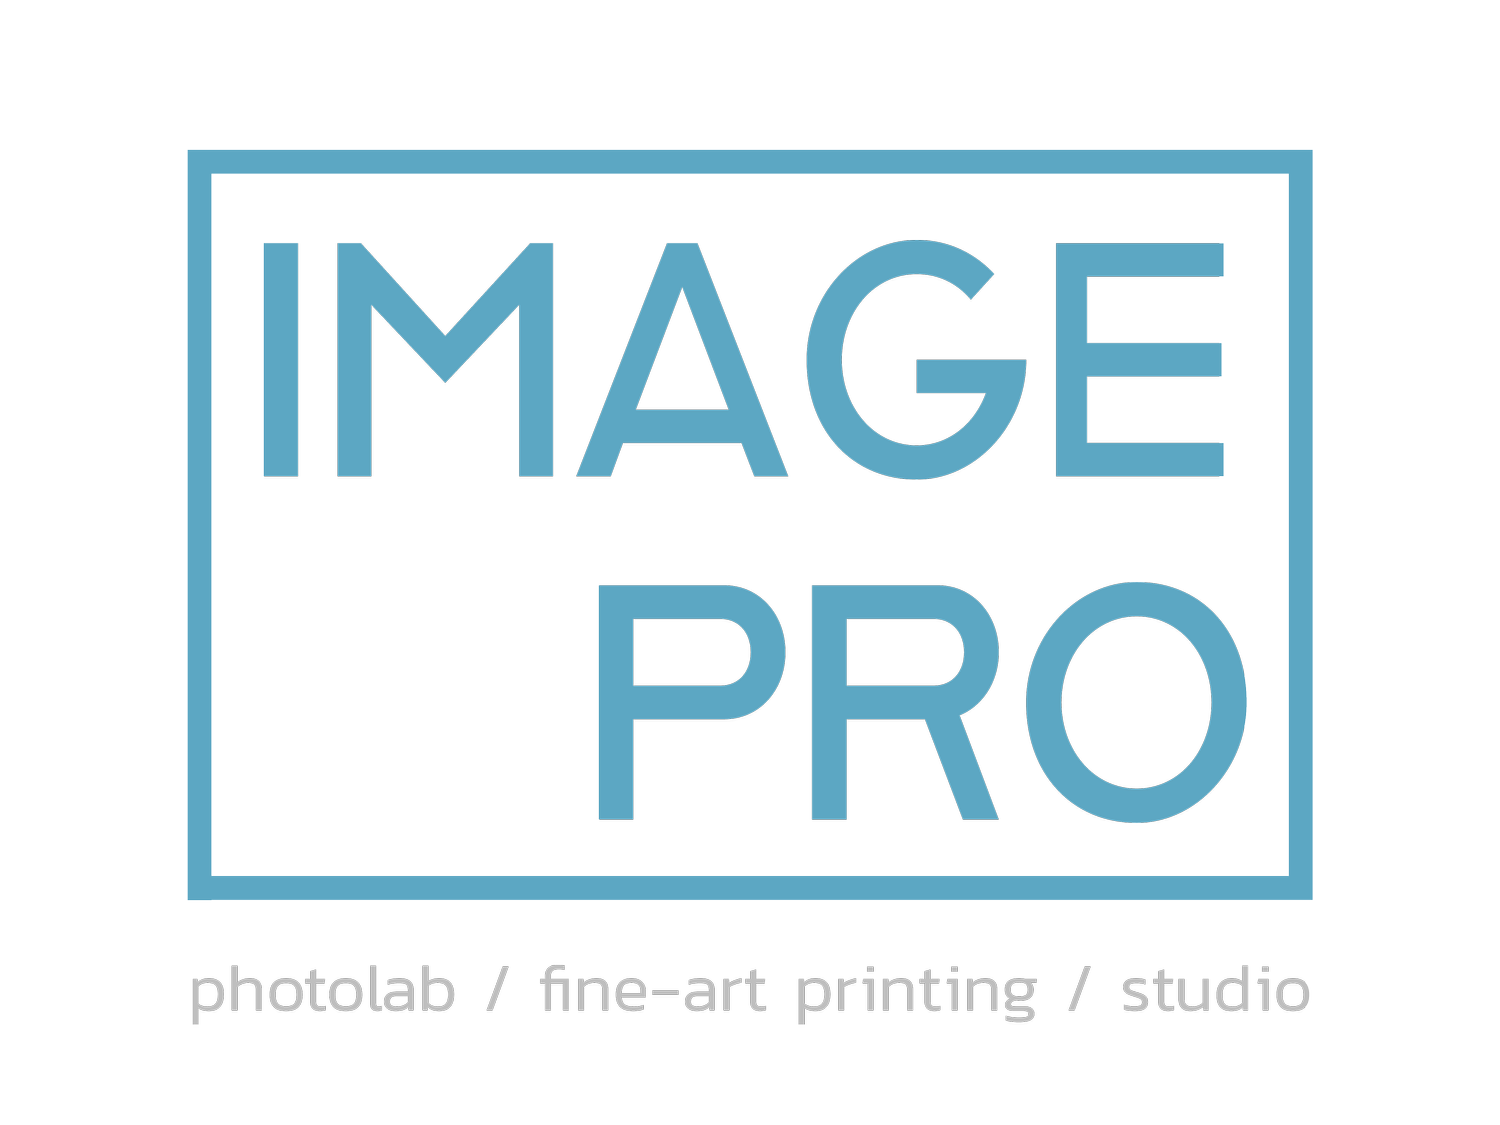 Image Pro Photolab